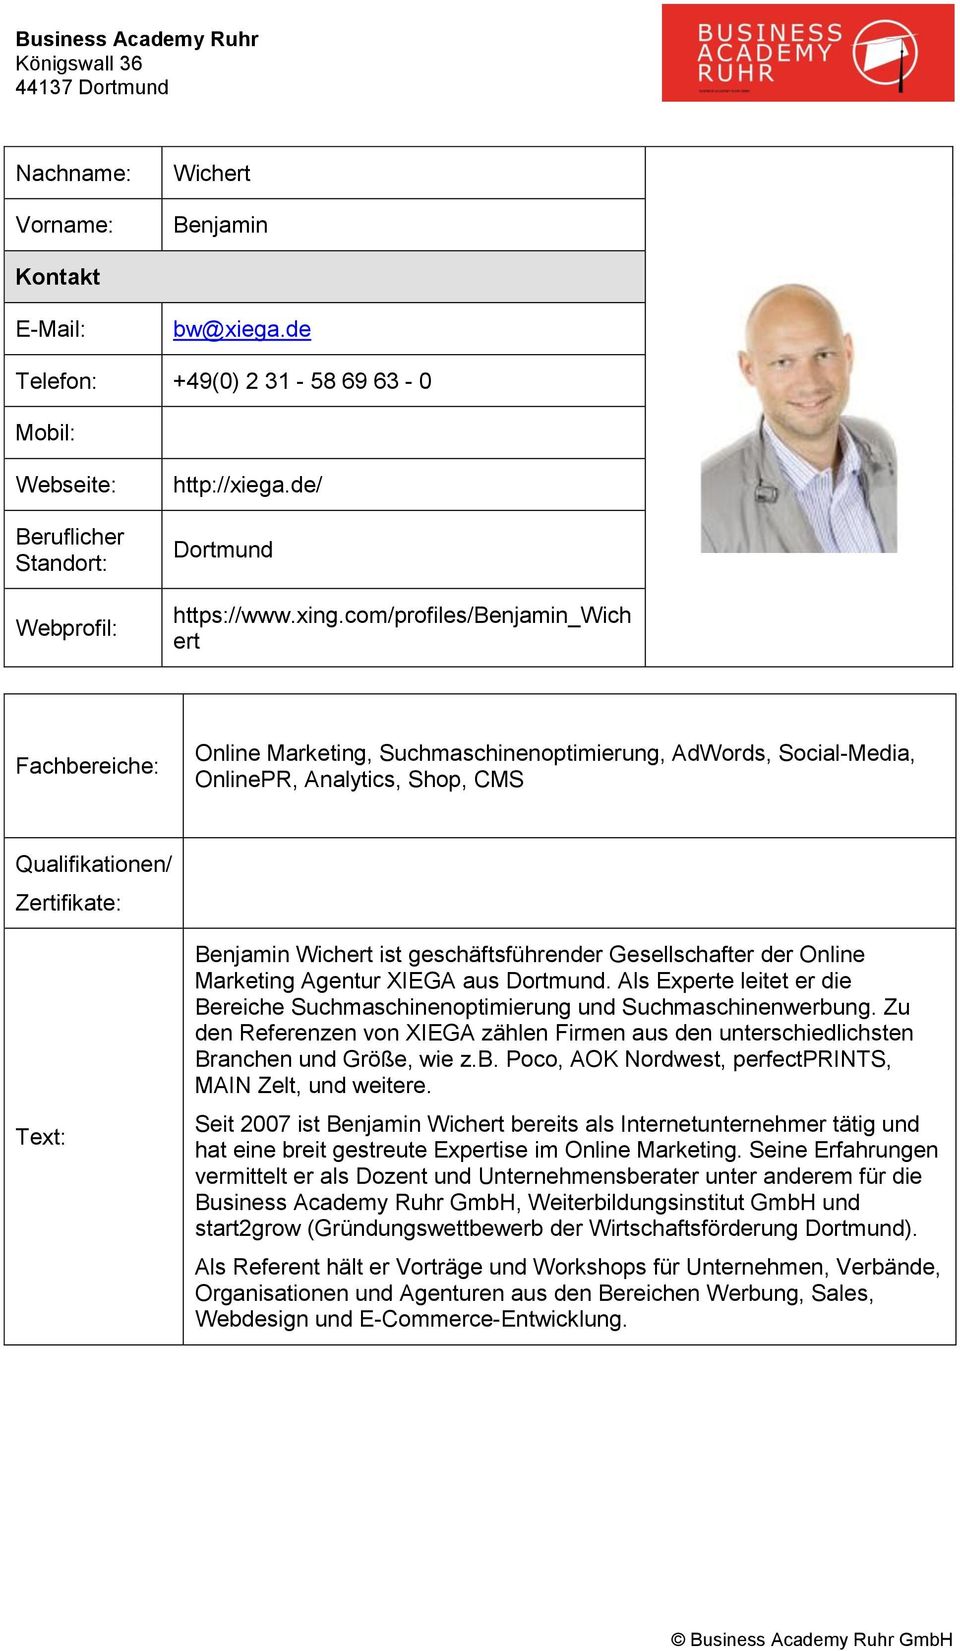 Marketing Agentur XIEGA aus Dortmund. Als Experte leitet er die Bereiche Suchmaschinenoptimierung und Suchmaschinenwerbung.